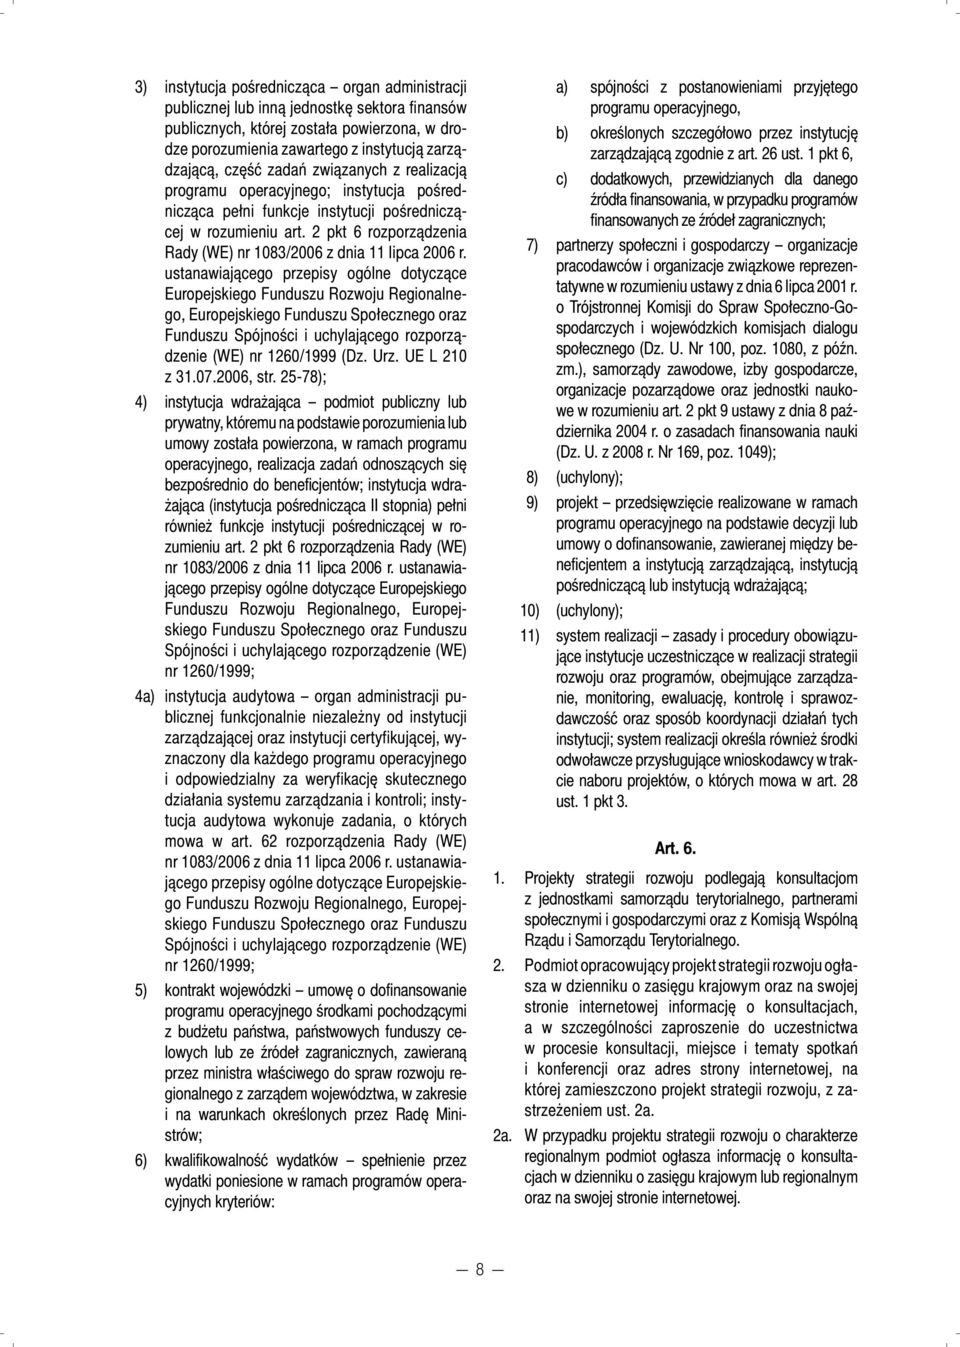 2 pkt 6 rozporządzenia Rady (WE) nr 1083/2006 z dnia 11 lipca 2006 r.